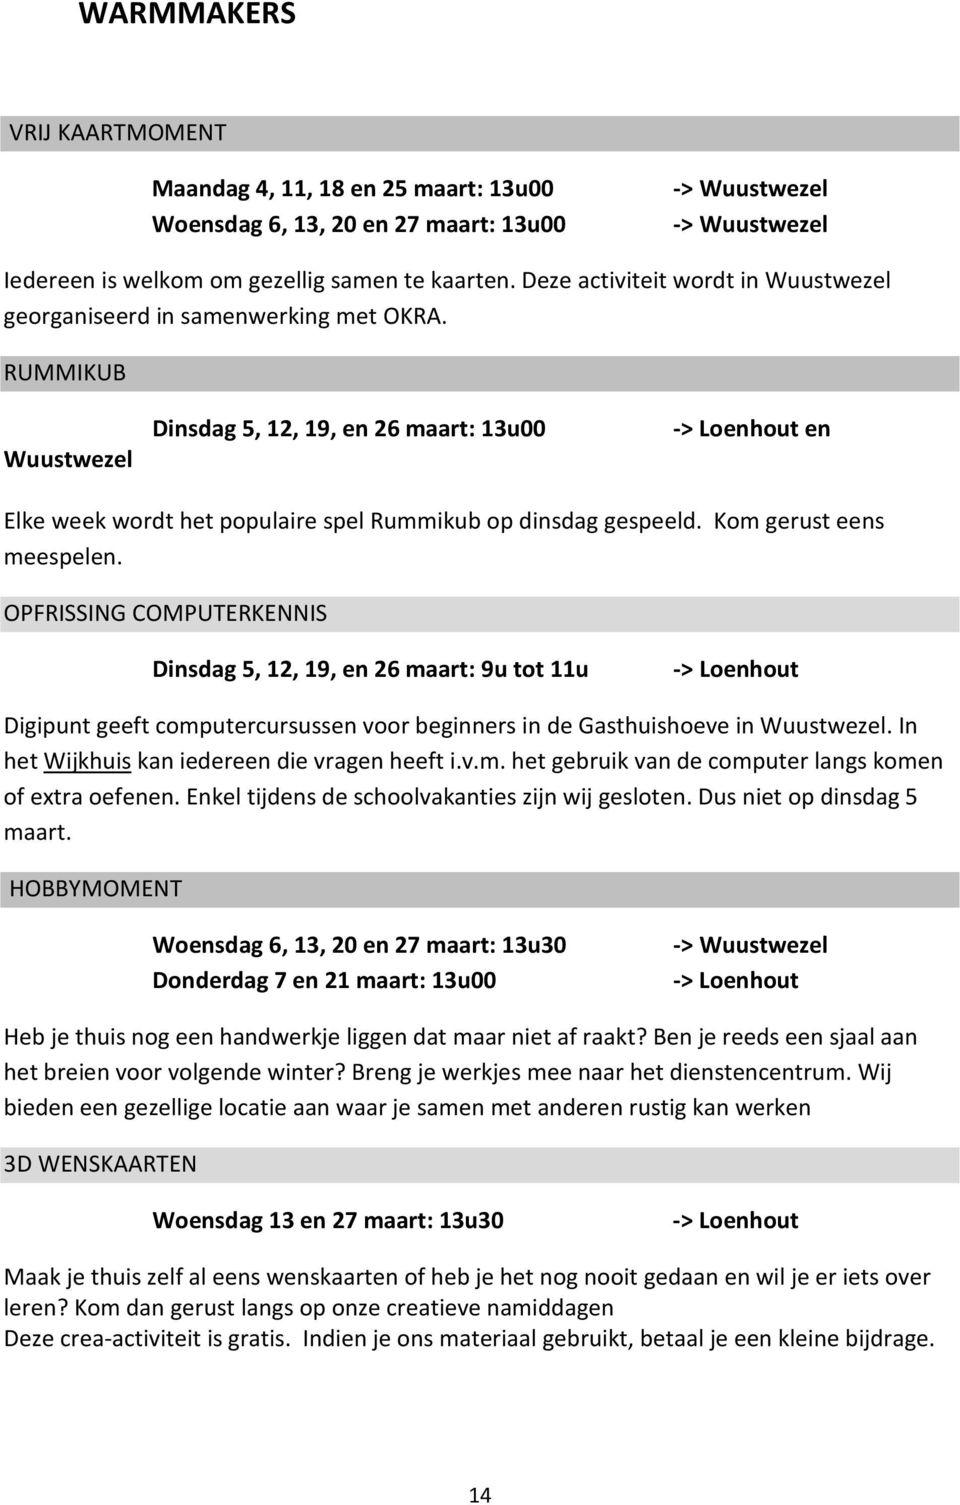 RUMMIKUB Wuustwezel Dinsdag 5, 12, 19, en 26 maart: 13u00 -> Loenhout en Elke week wordt het populaire spel Rummikub op dinsdag gespeeld. Kom gerust eens meespelen.